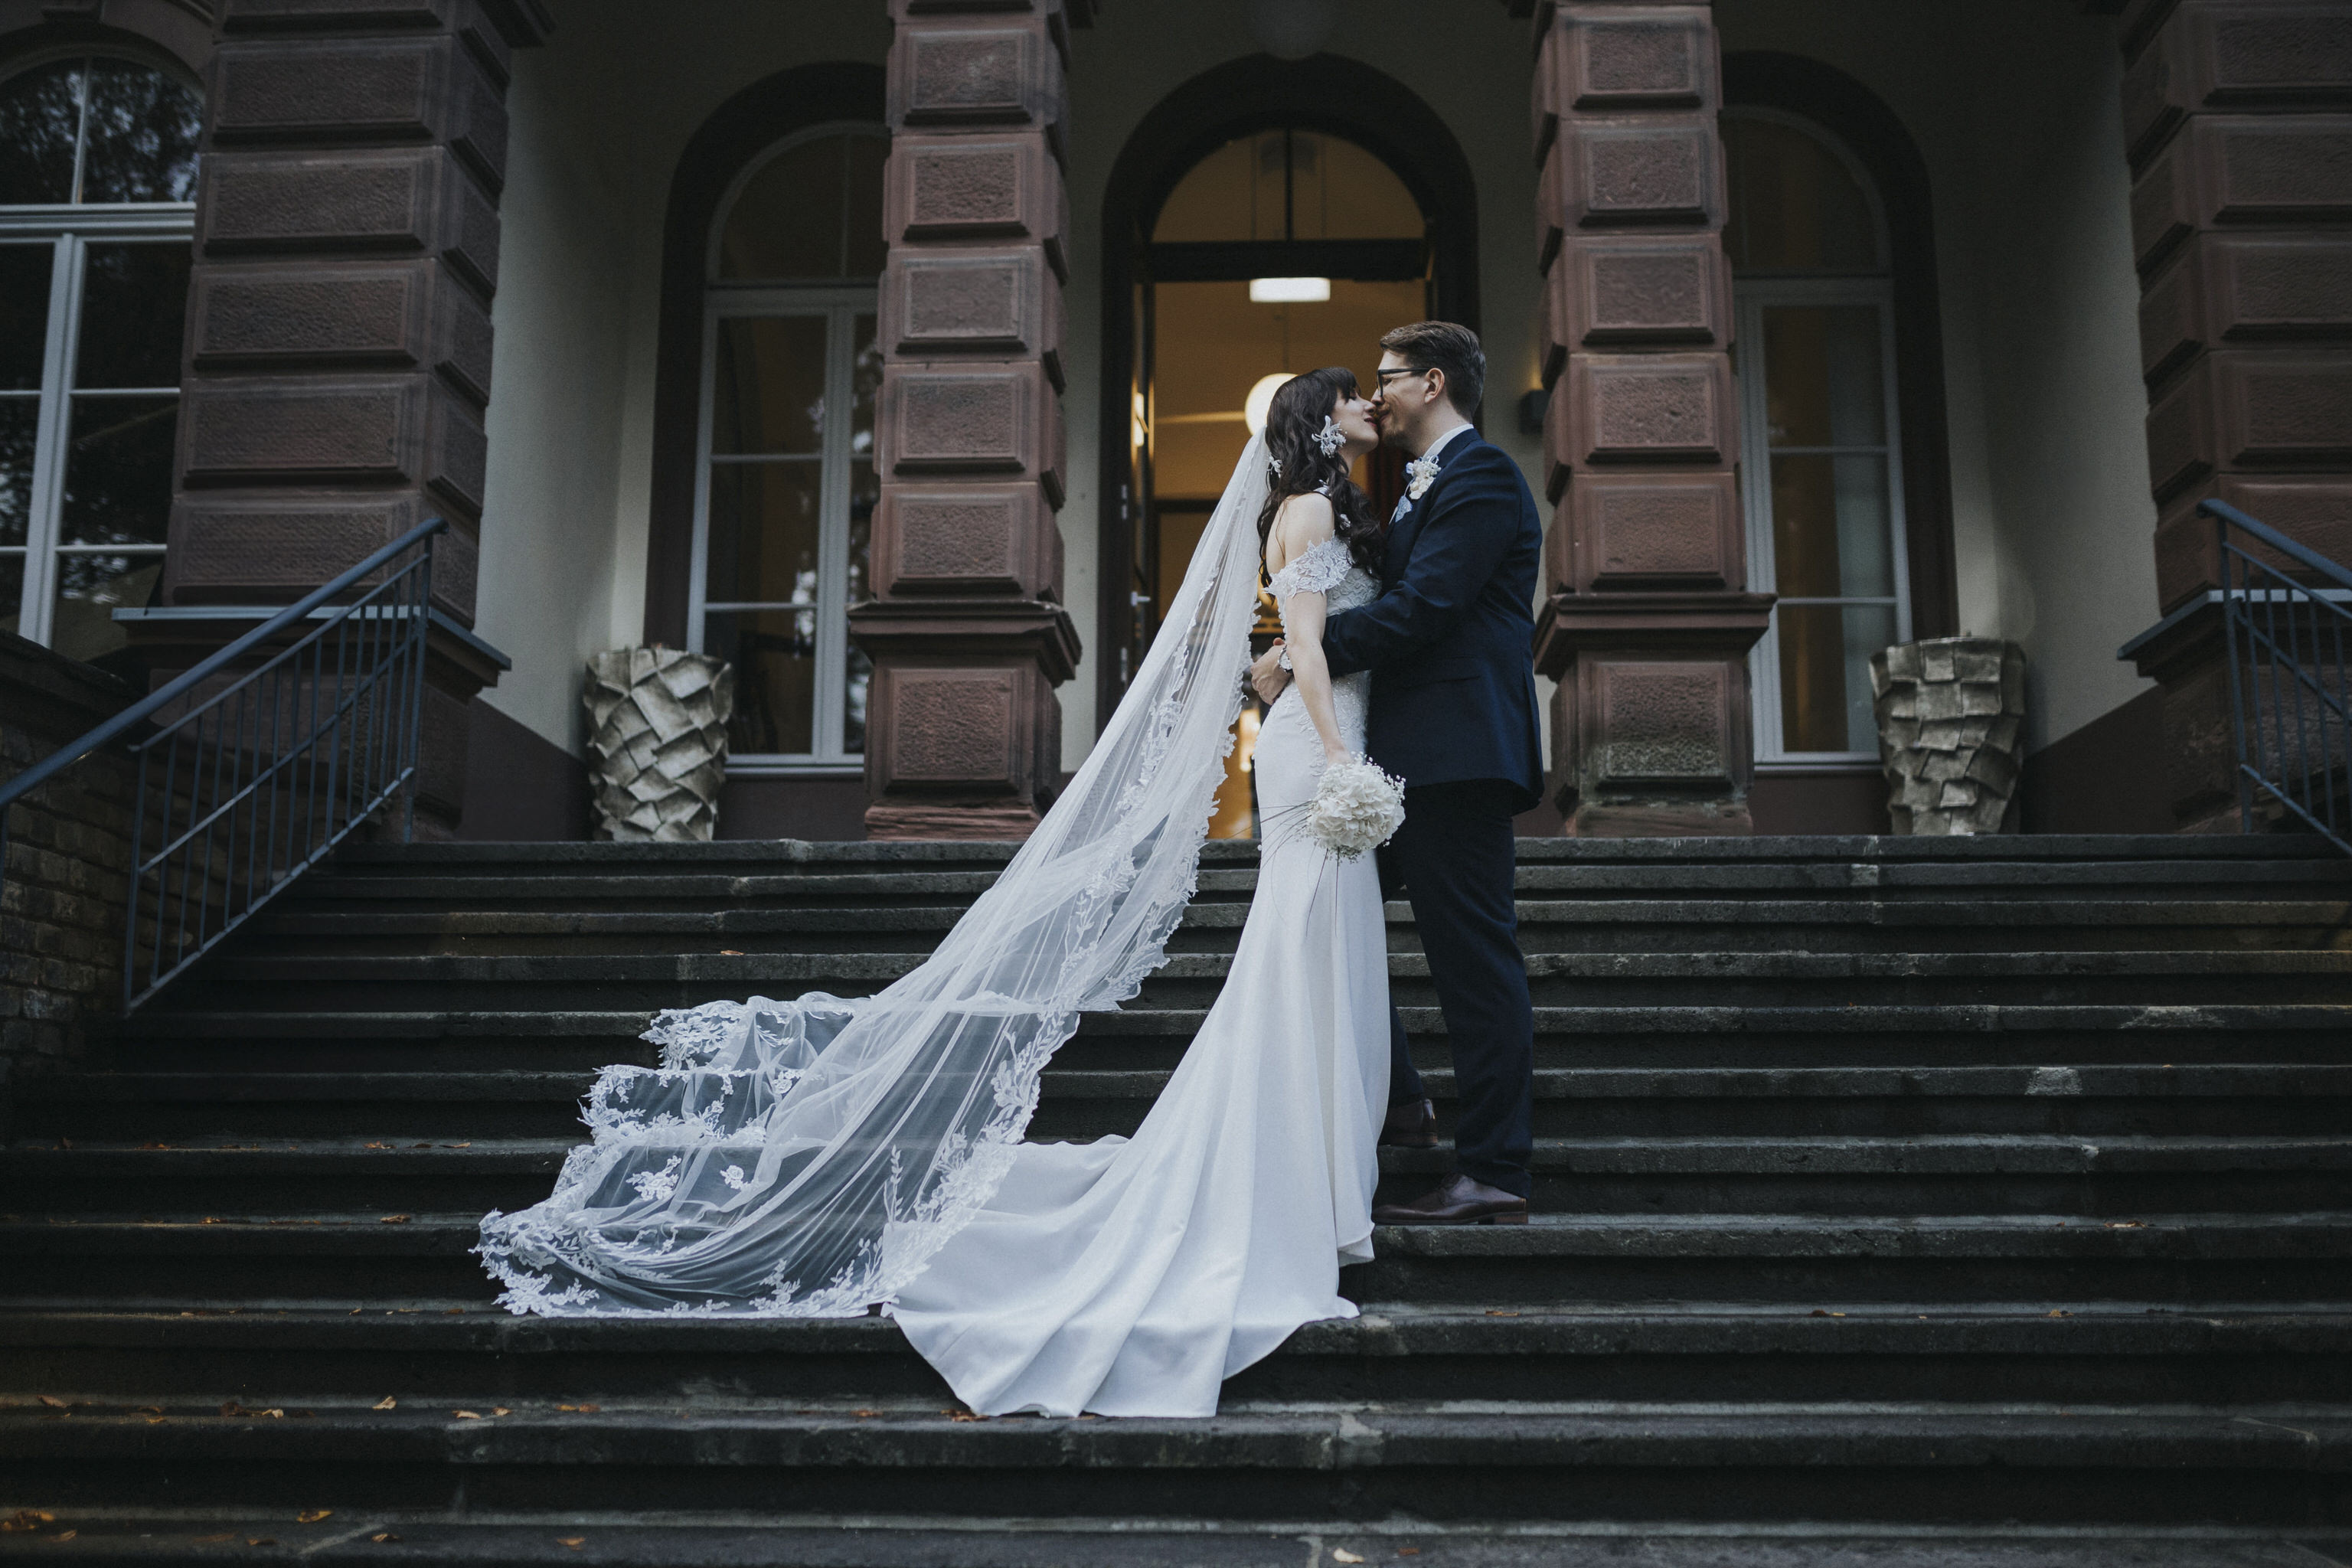 Verliebtes Brautpaar vor den historischen Elementen des Kaiserbahnhofs – romantische Brautpaarfotos, die die Liebe inmitten des charmanten Ambientes einfangen.